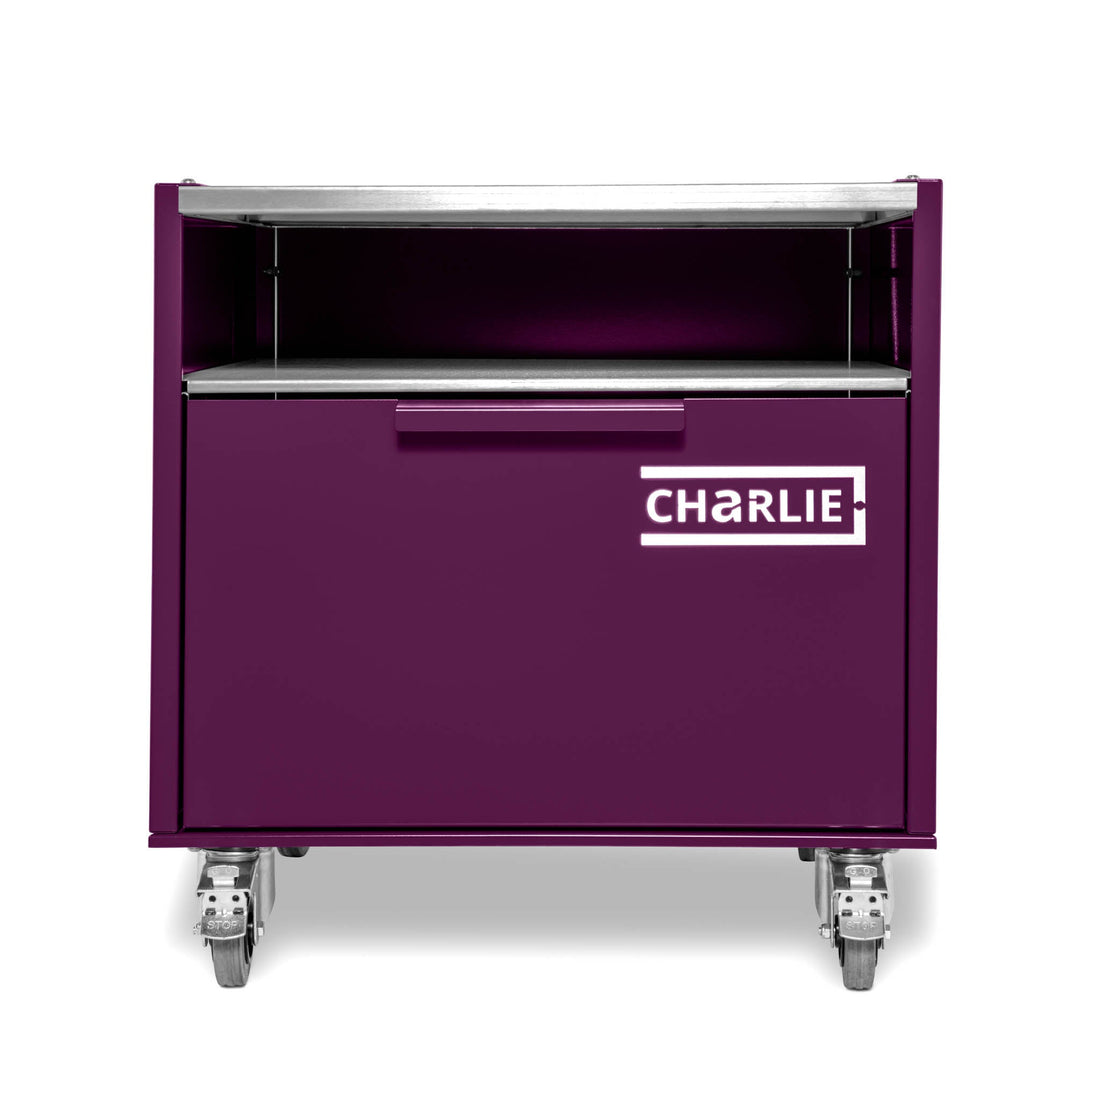 Charlie Base Cabinet - Beetroot - Charlie Oven